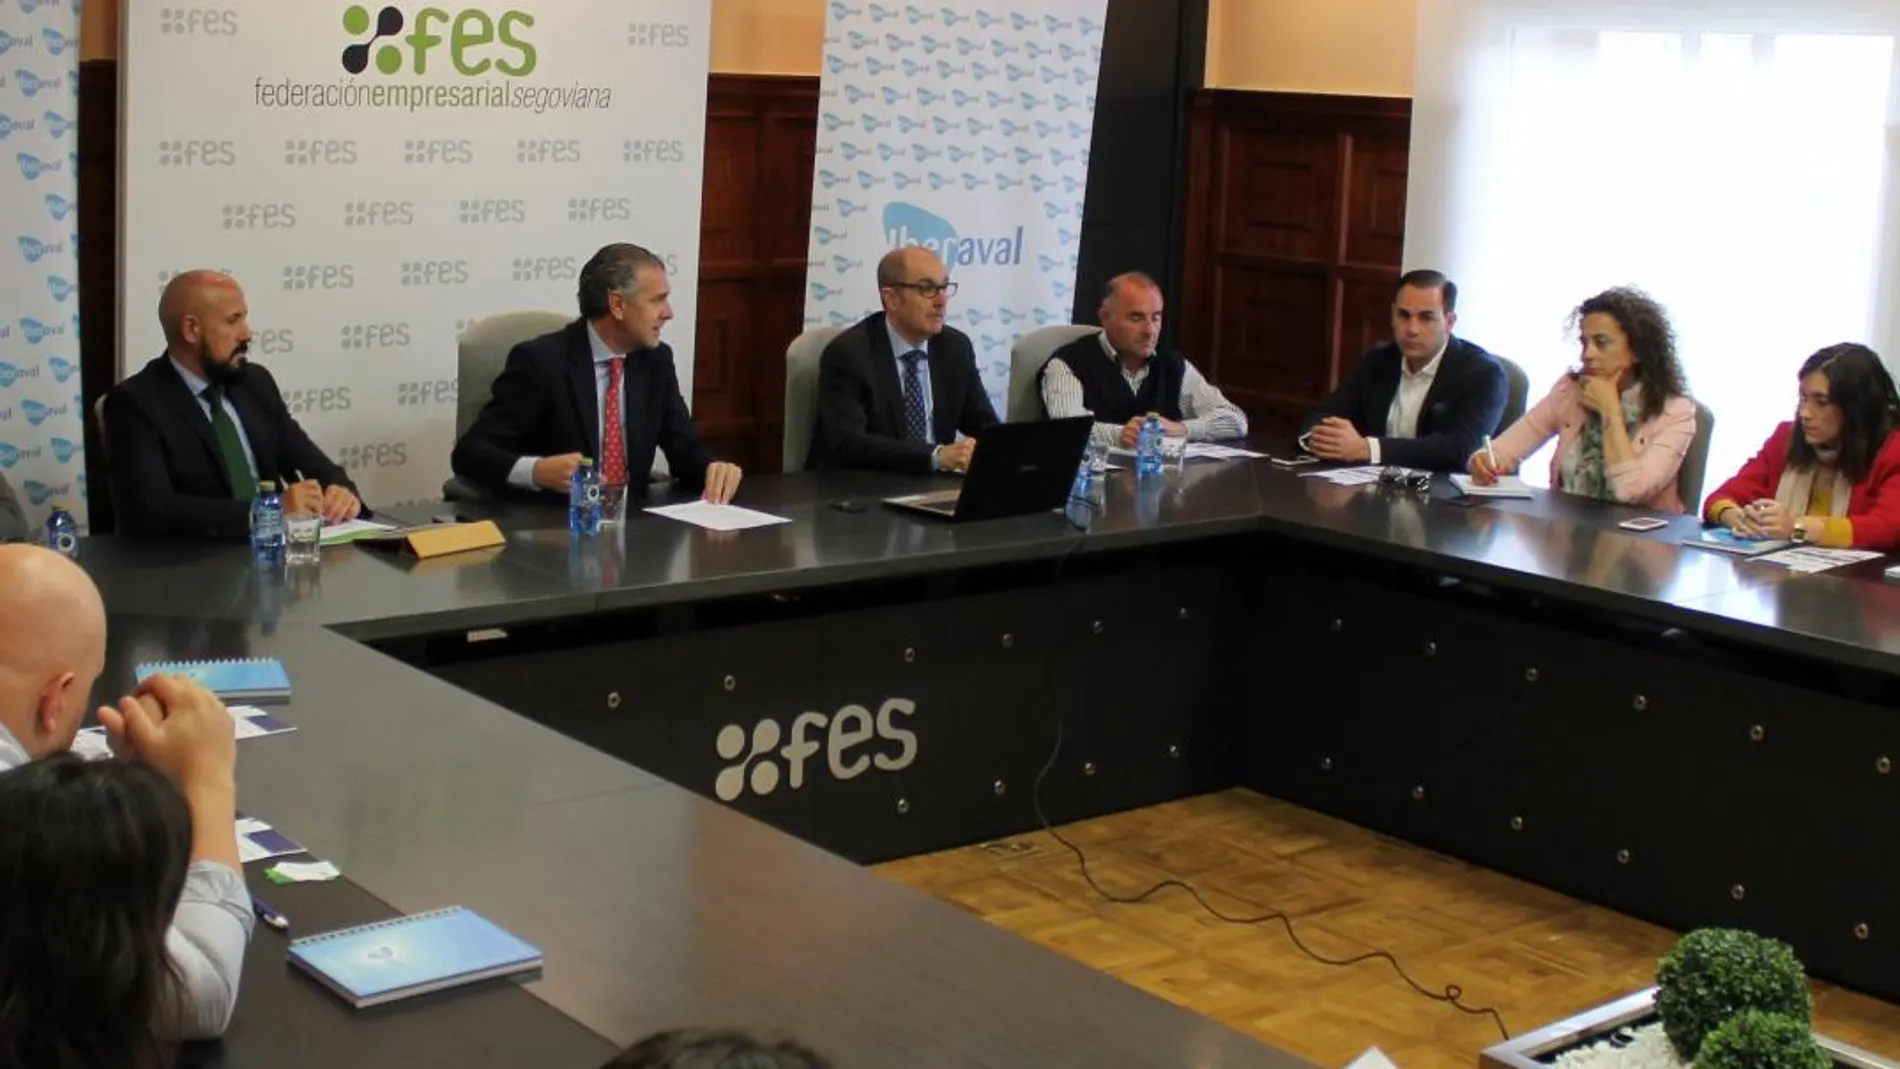 Pedro Pisonero interviene en la jornada junto a Andrés García, presidente de FES / La Razón